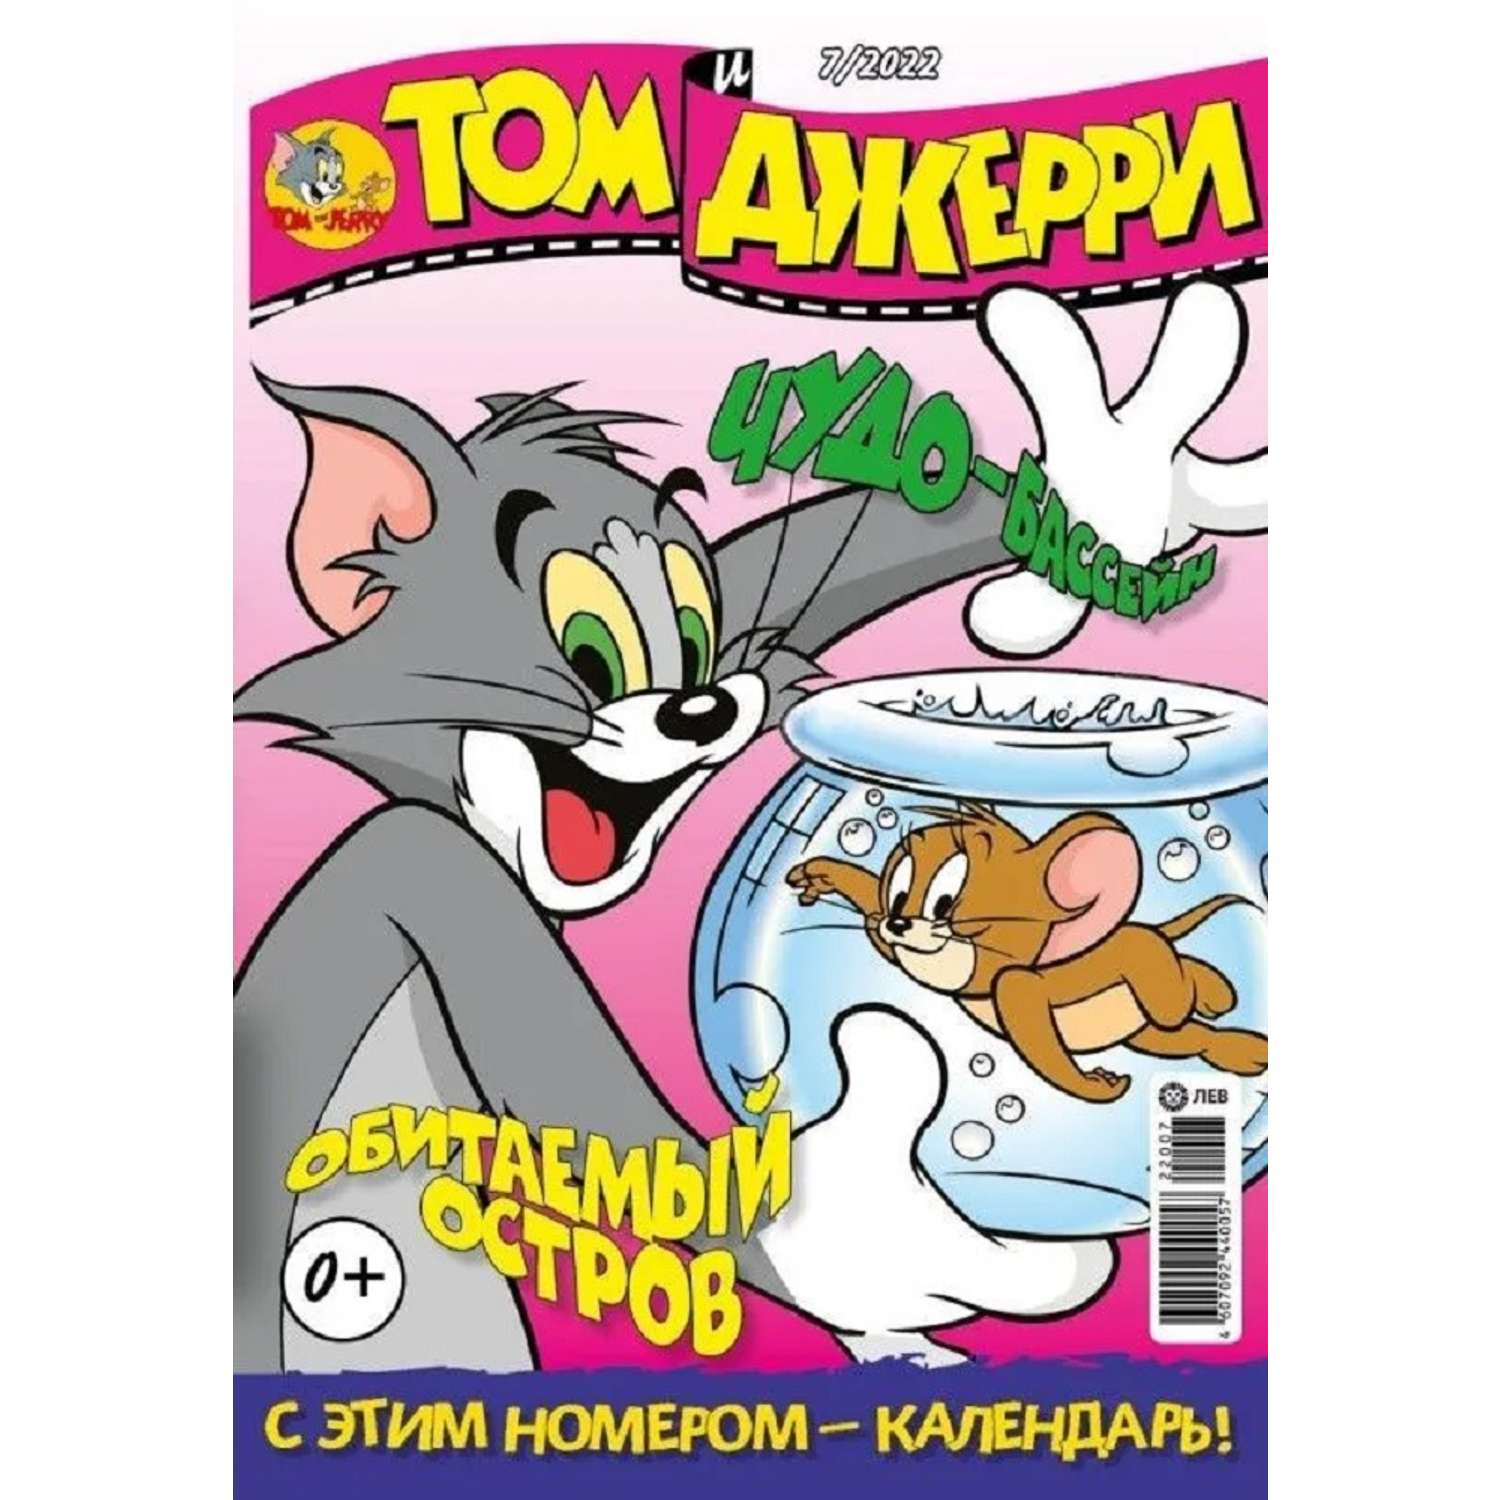 Журналы Tom and Jerry (WB) для детей 3 шт 7/22 + 8/22 + 9/22 Том и Джерри - фото 2